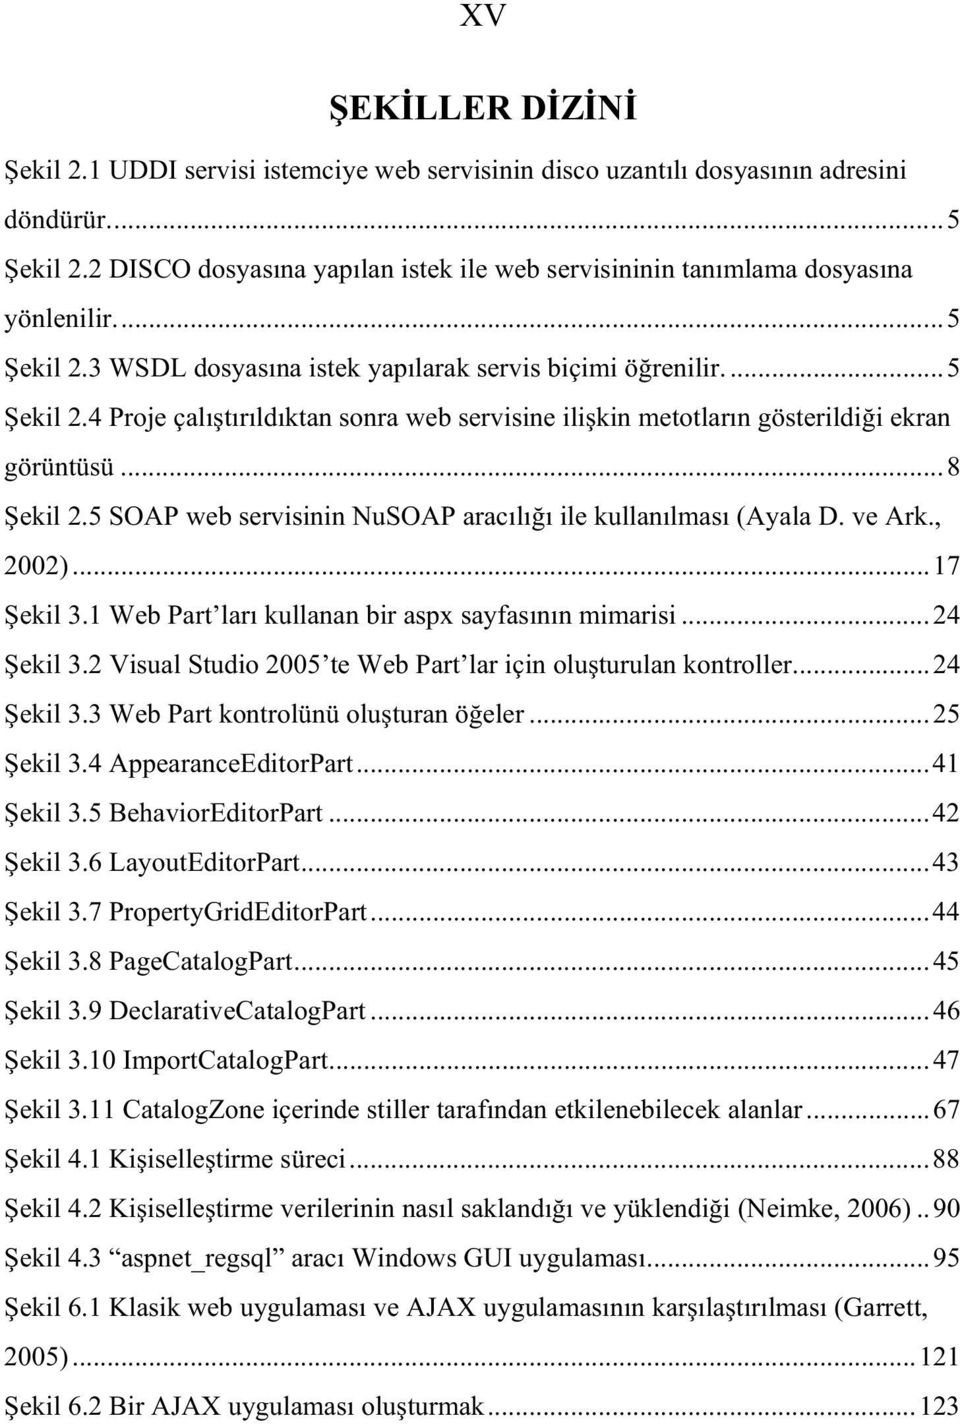 ..8 ekil 2.5 SOAP web servisinin NuSOAP arac l ile kullan lmas (Ayala D. ve Ark., 2002)...17 ekil 3.1 Web Part lar kullanan bir aspx sayfas n n mimarisi...24 ekil 3.